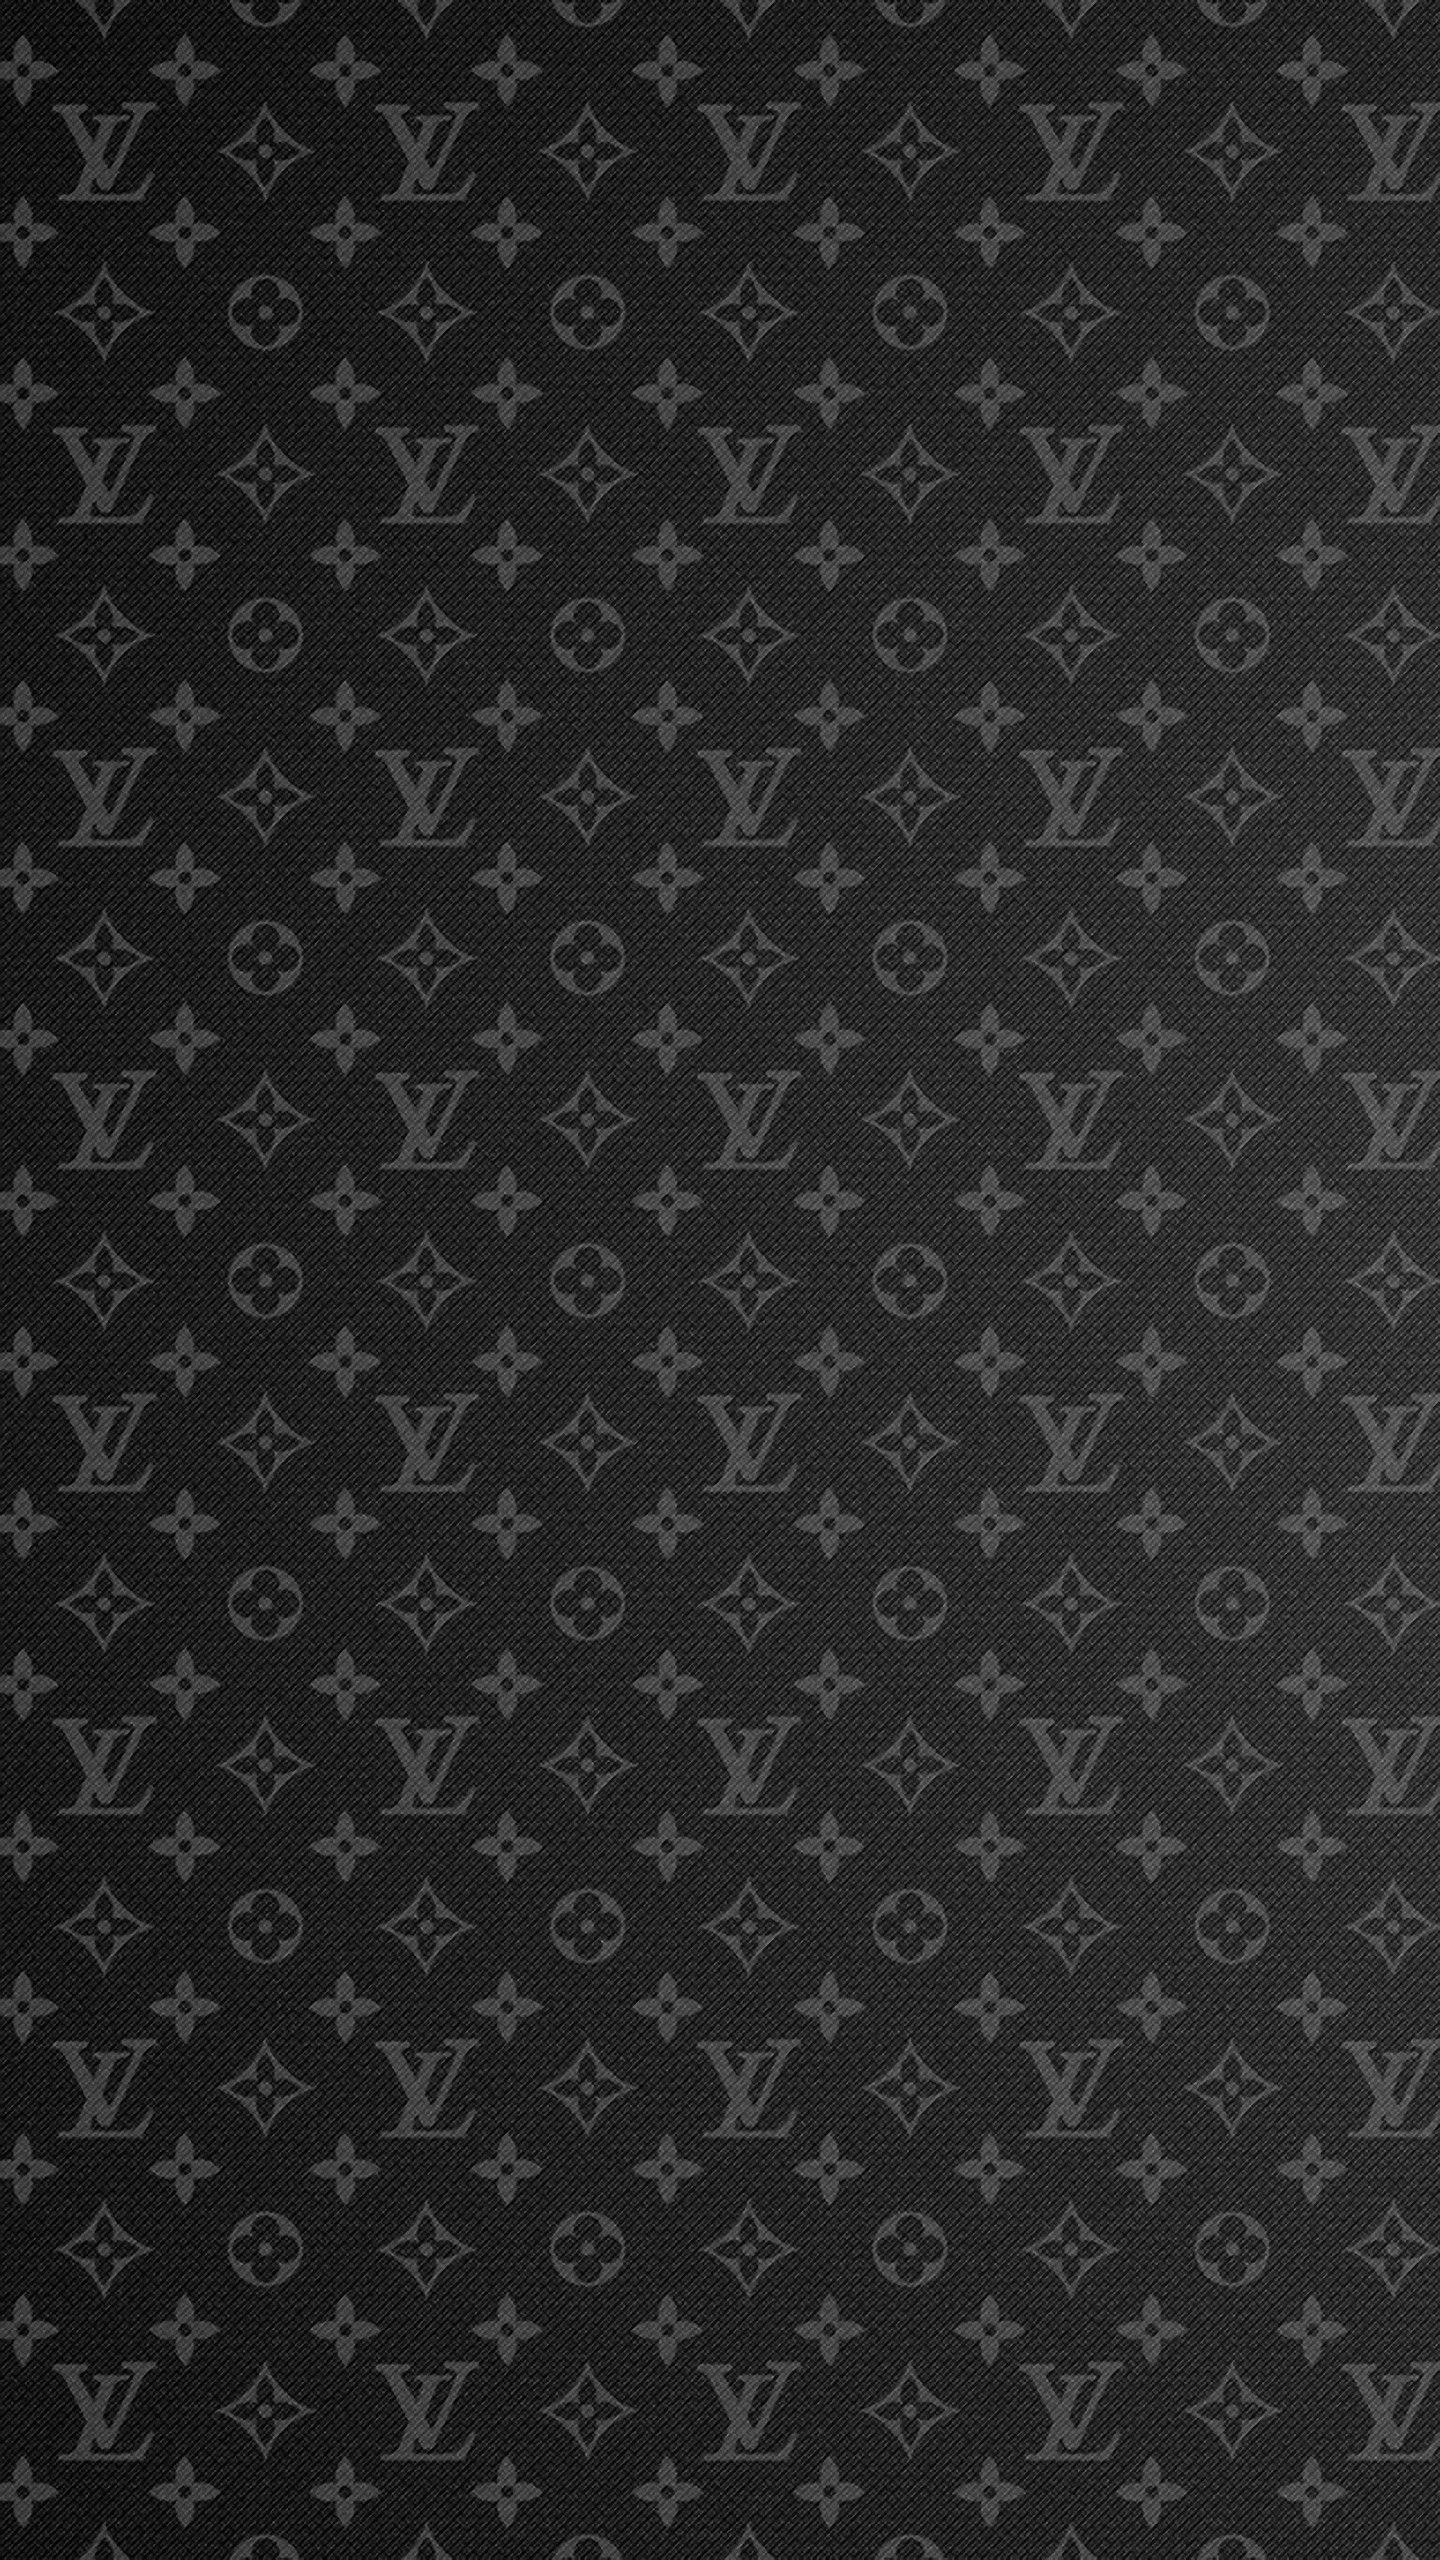 Louis Vuitton Wallpaper Iphone X